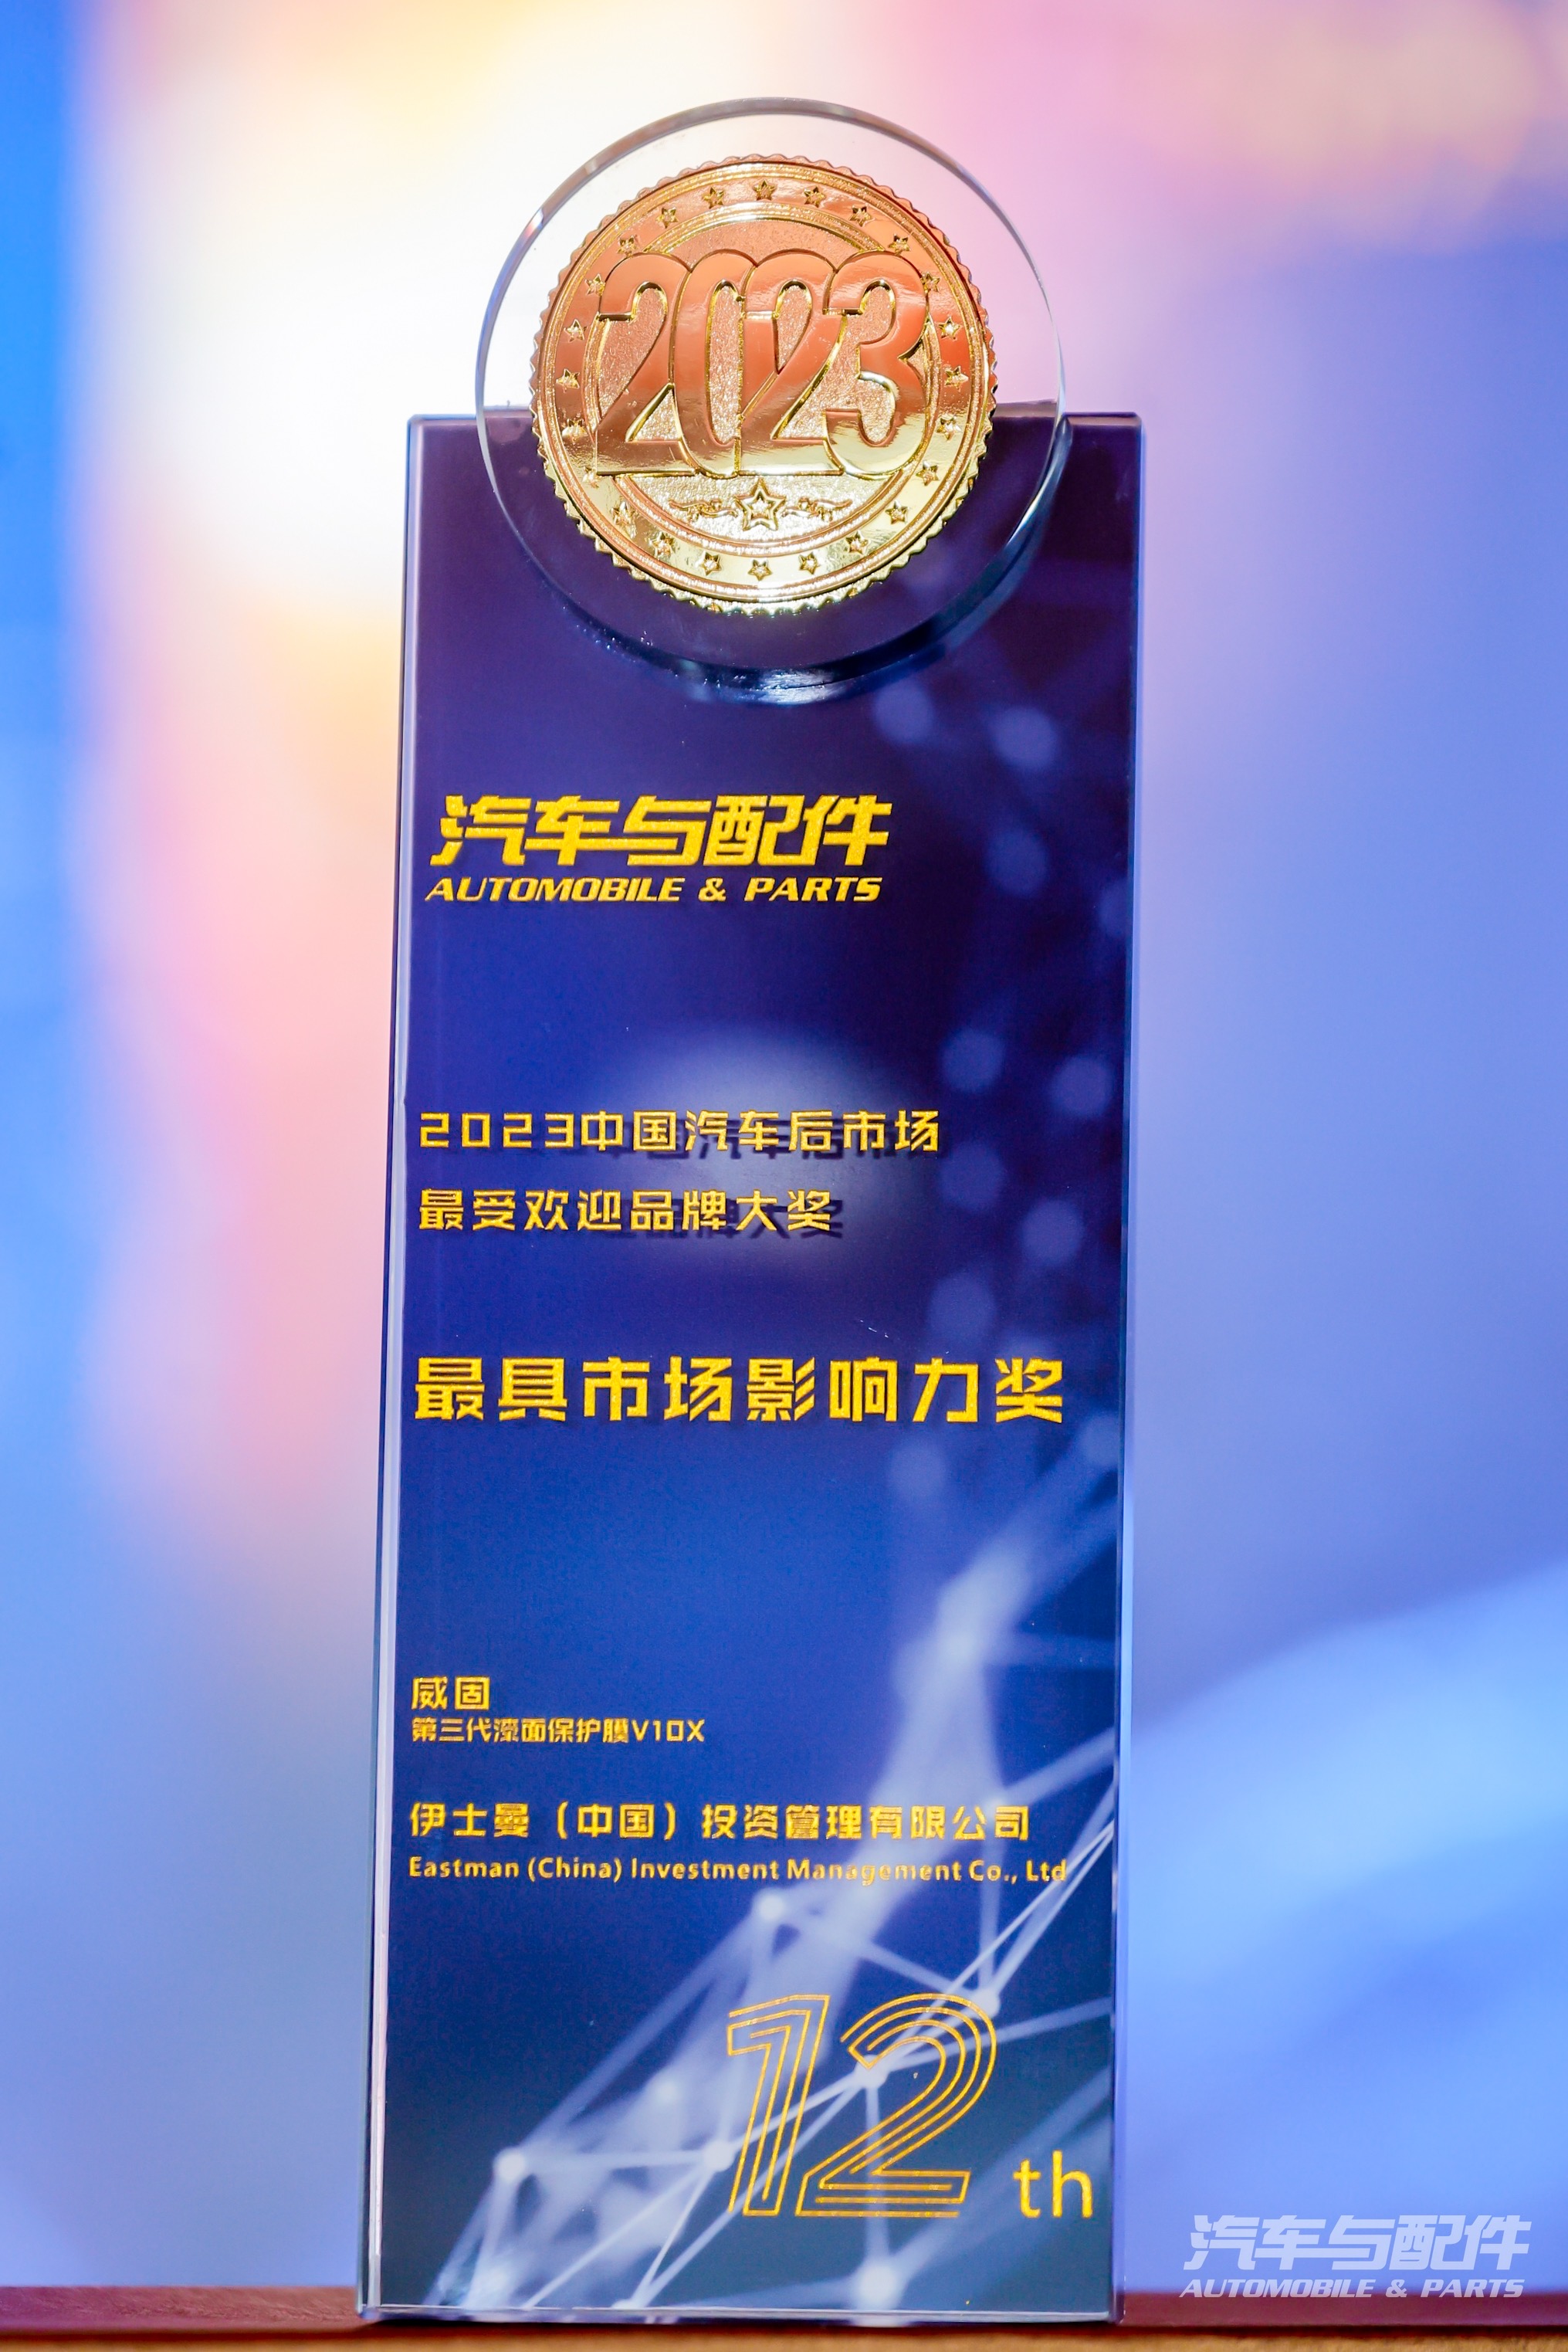 2023中国汽车后市场最受欢迎品牌大奖·最具市场影响力奖